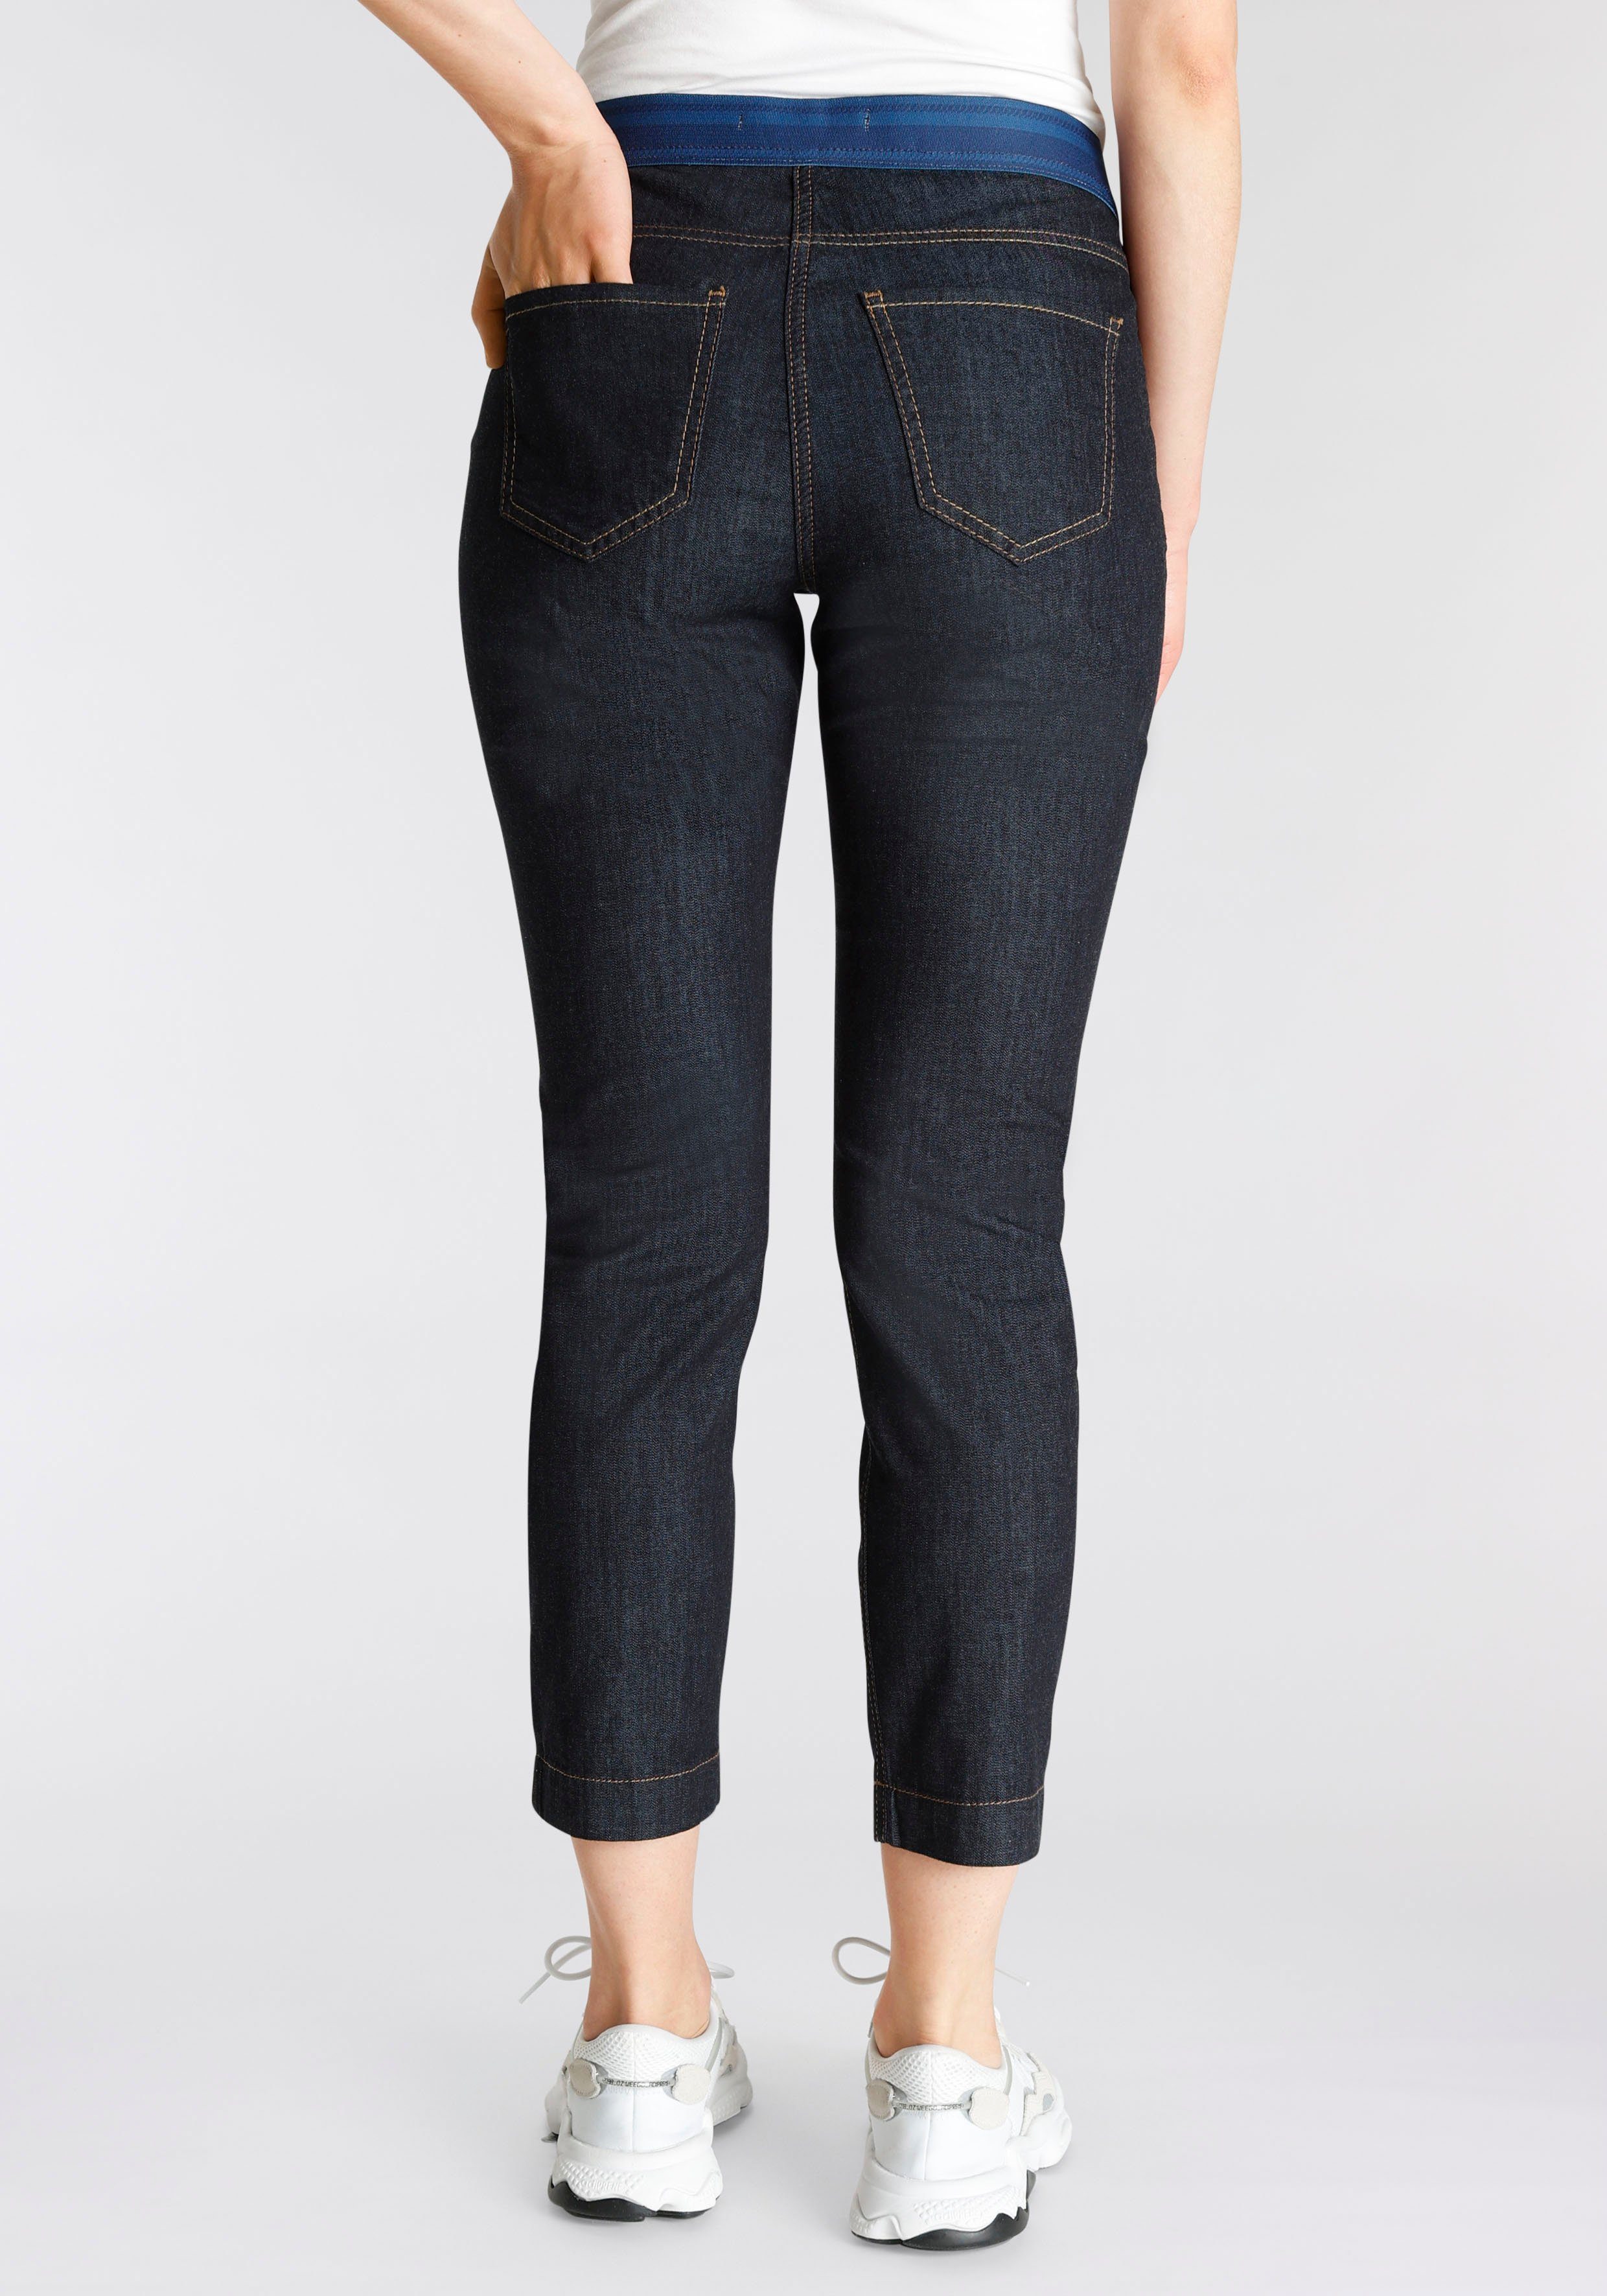 Sport cropped an elastischem fashion 7/8-Jeans Taille mit Slim rinsed Bund der MAC